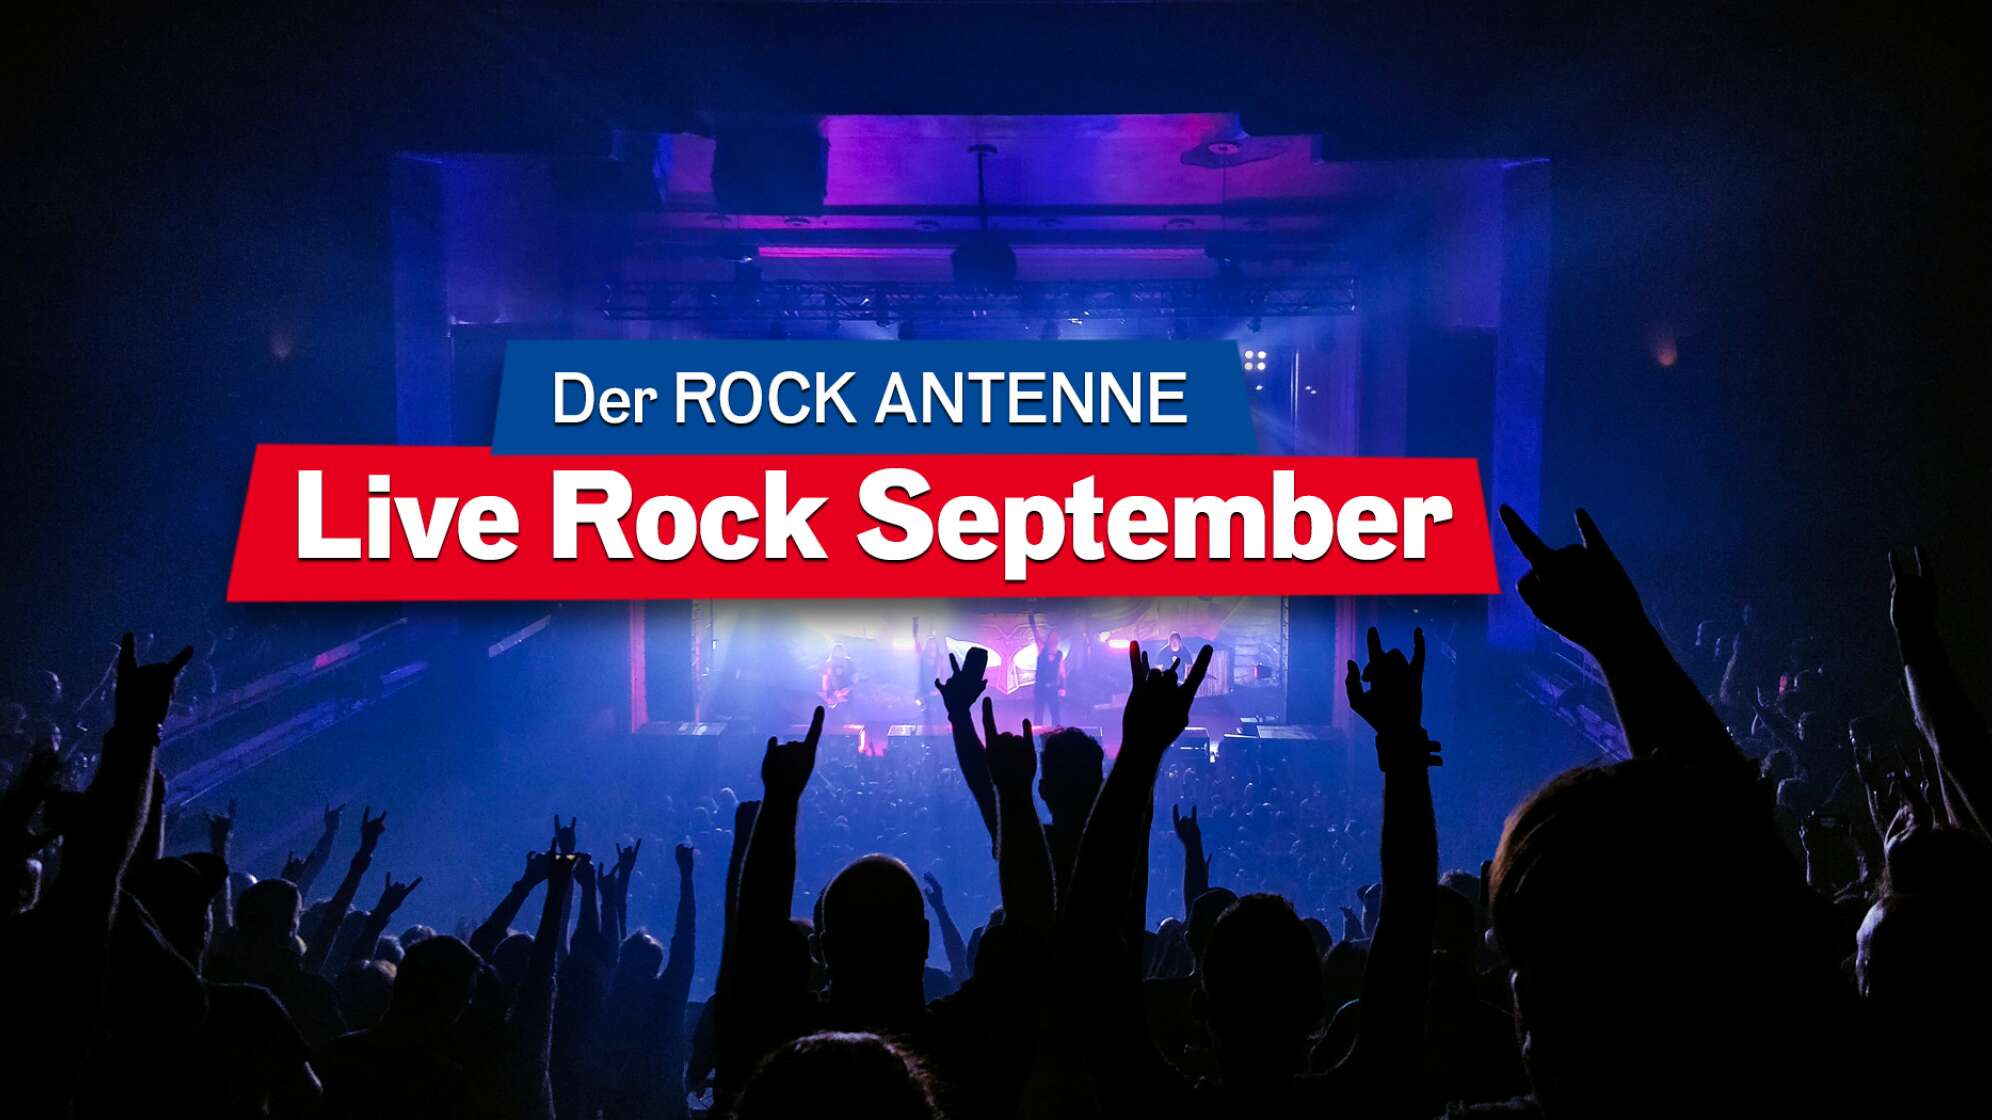 Blick auf die Bühne bei einem Konzert, Aufschrift "Der ROCK ANTENNE Live Rock September"